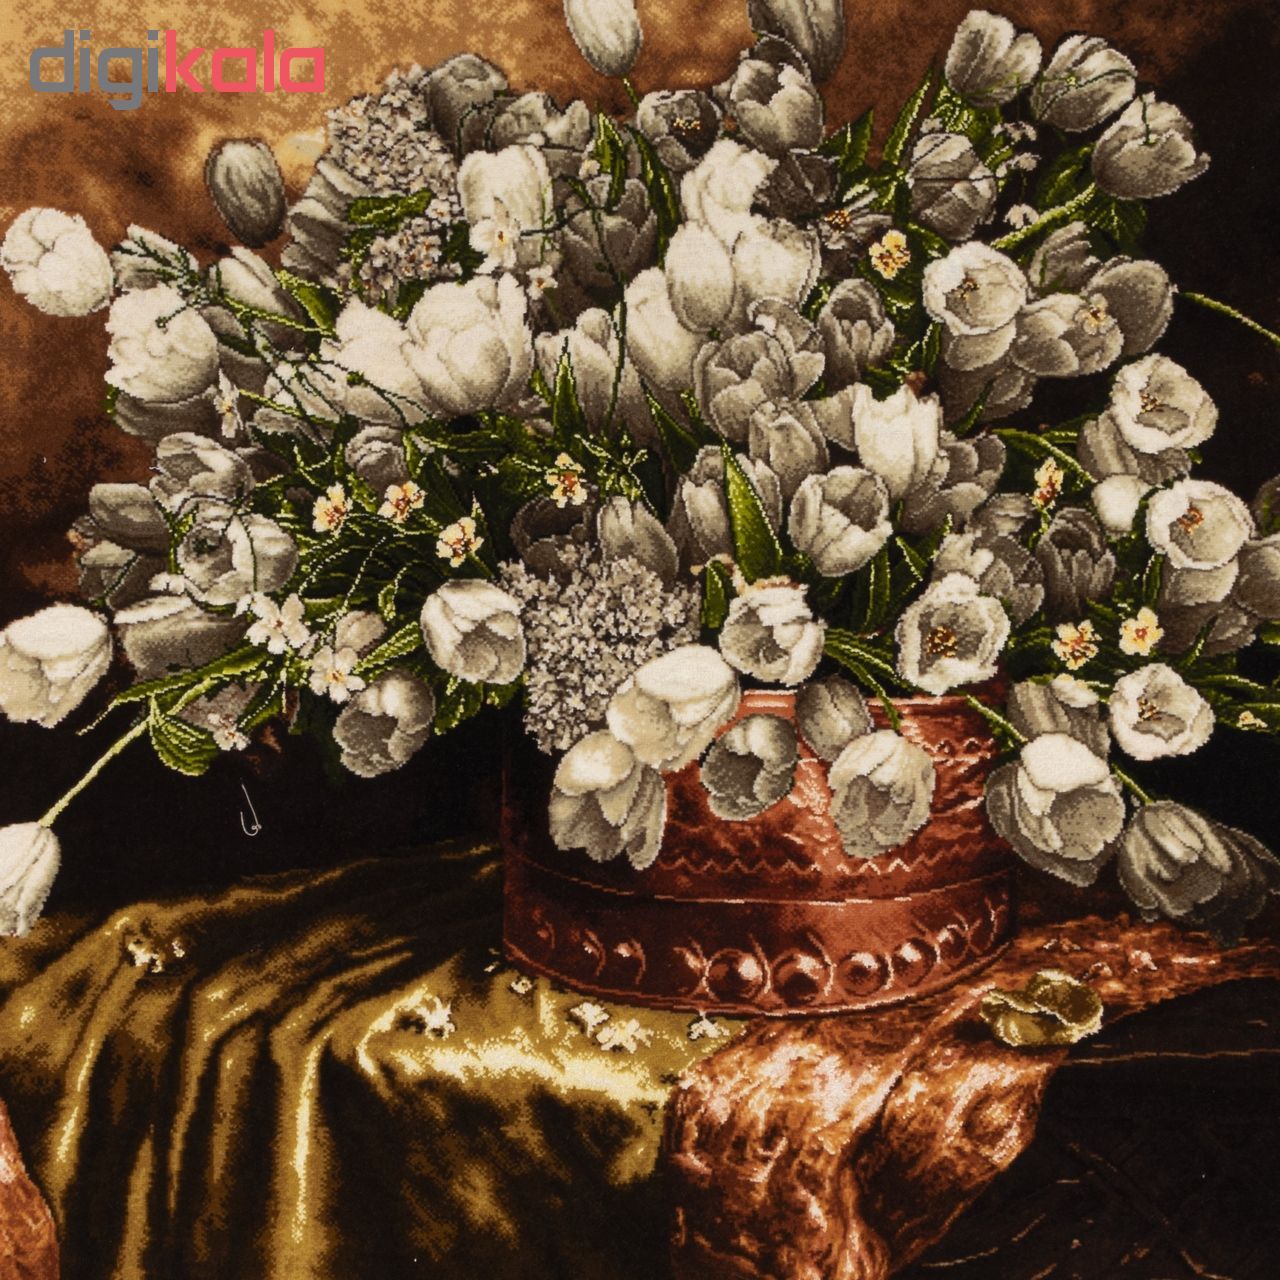 تابلو فرش دستباف سی پرشیا طرح گل های لاله در گلدان کد 901745